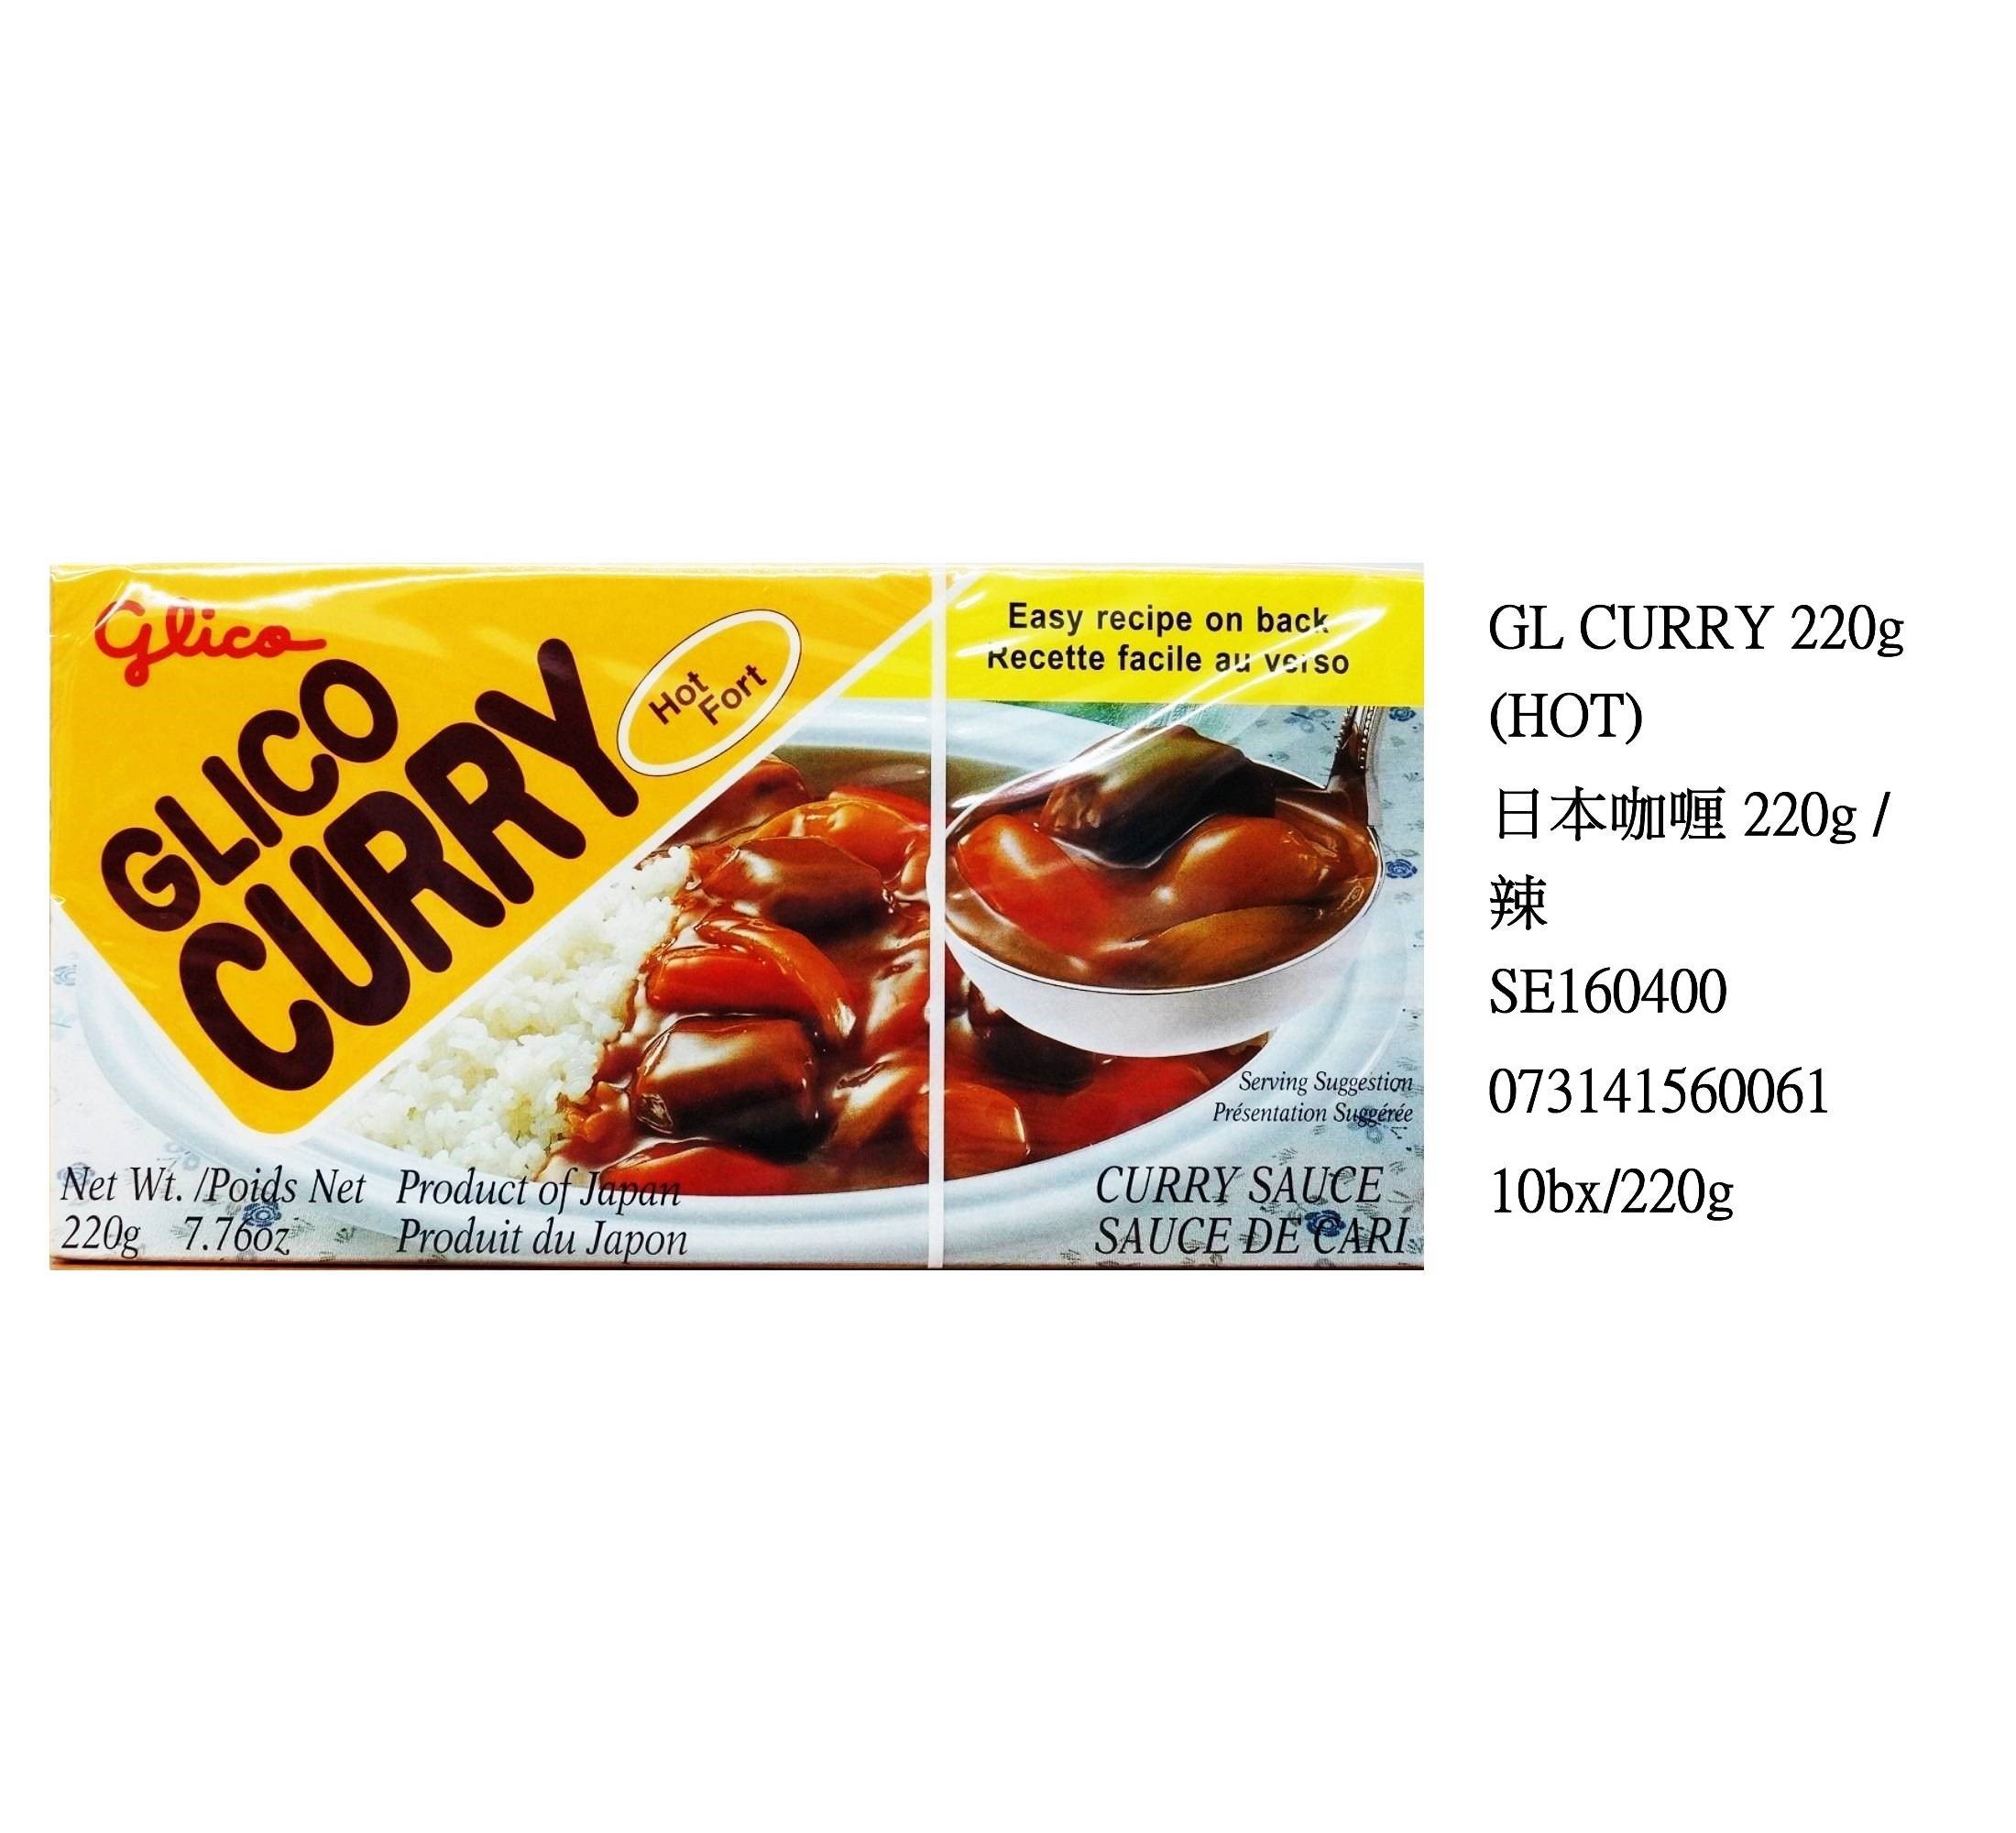 GLICO CURRY (HOT) SE160400